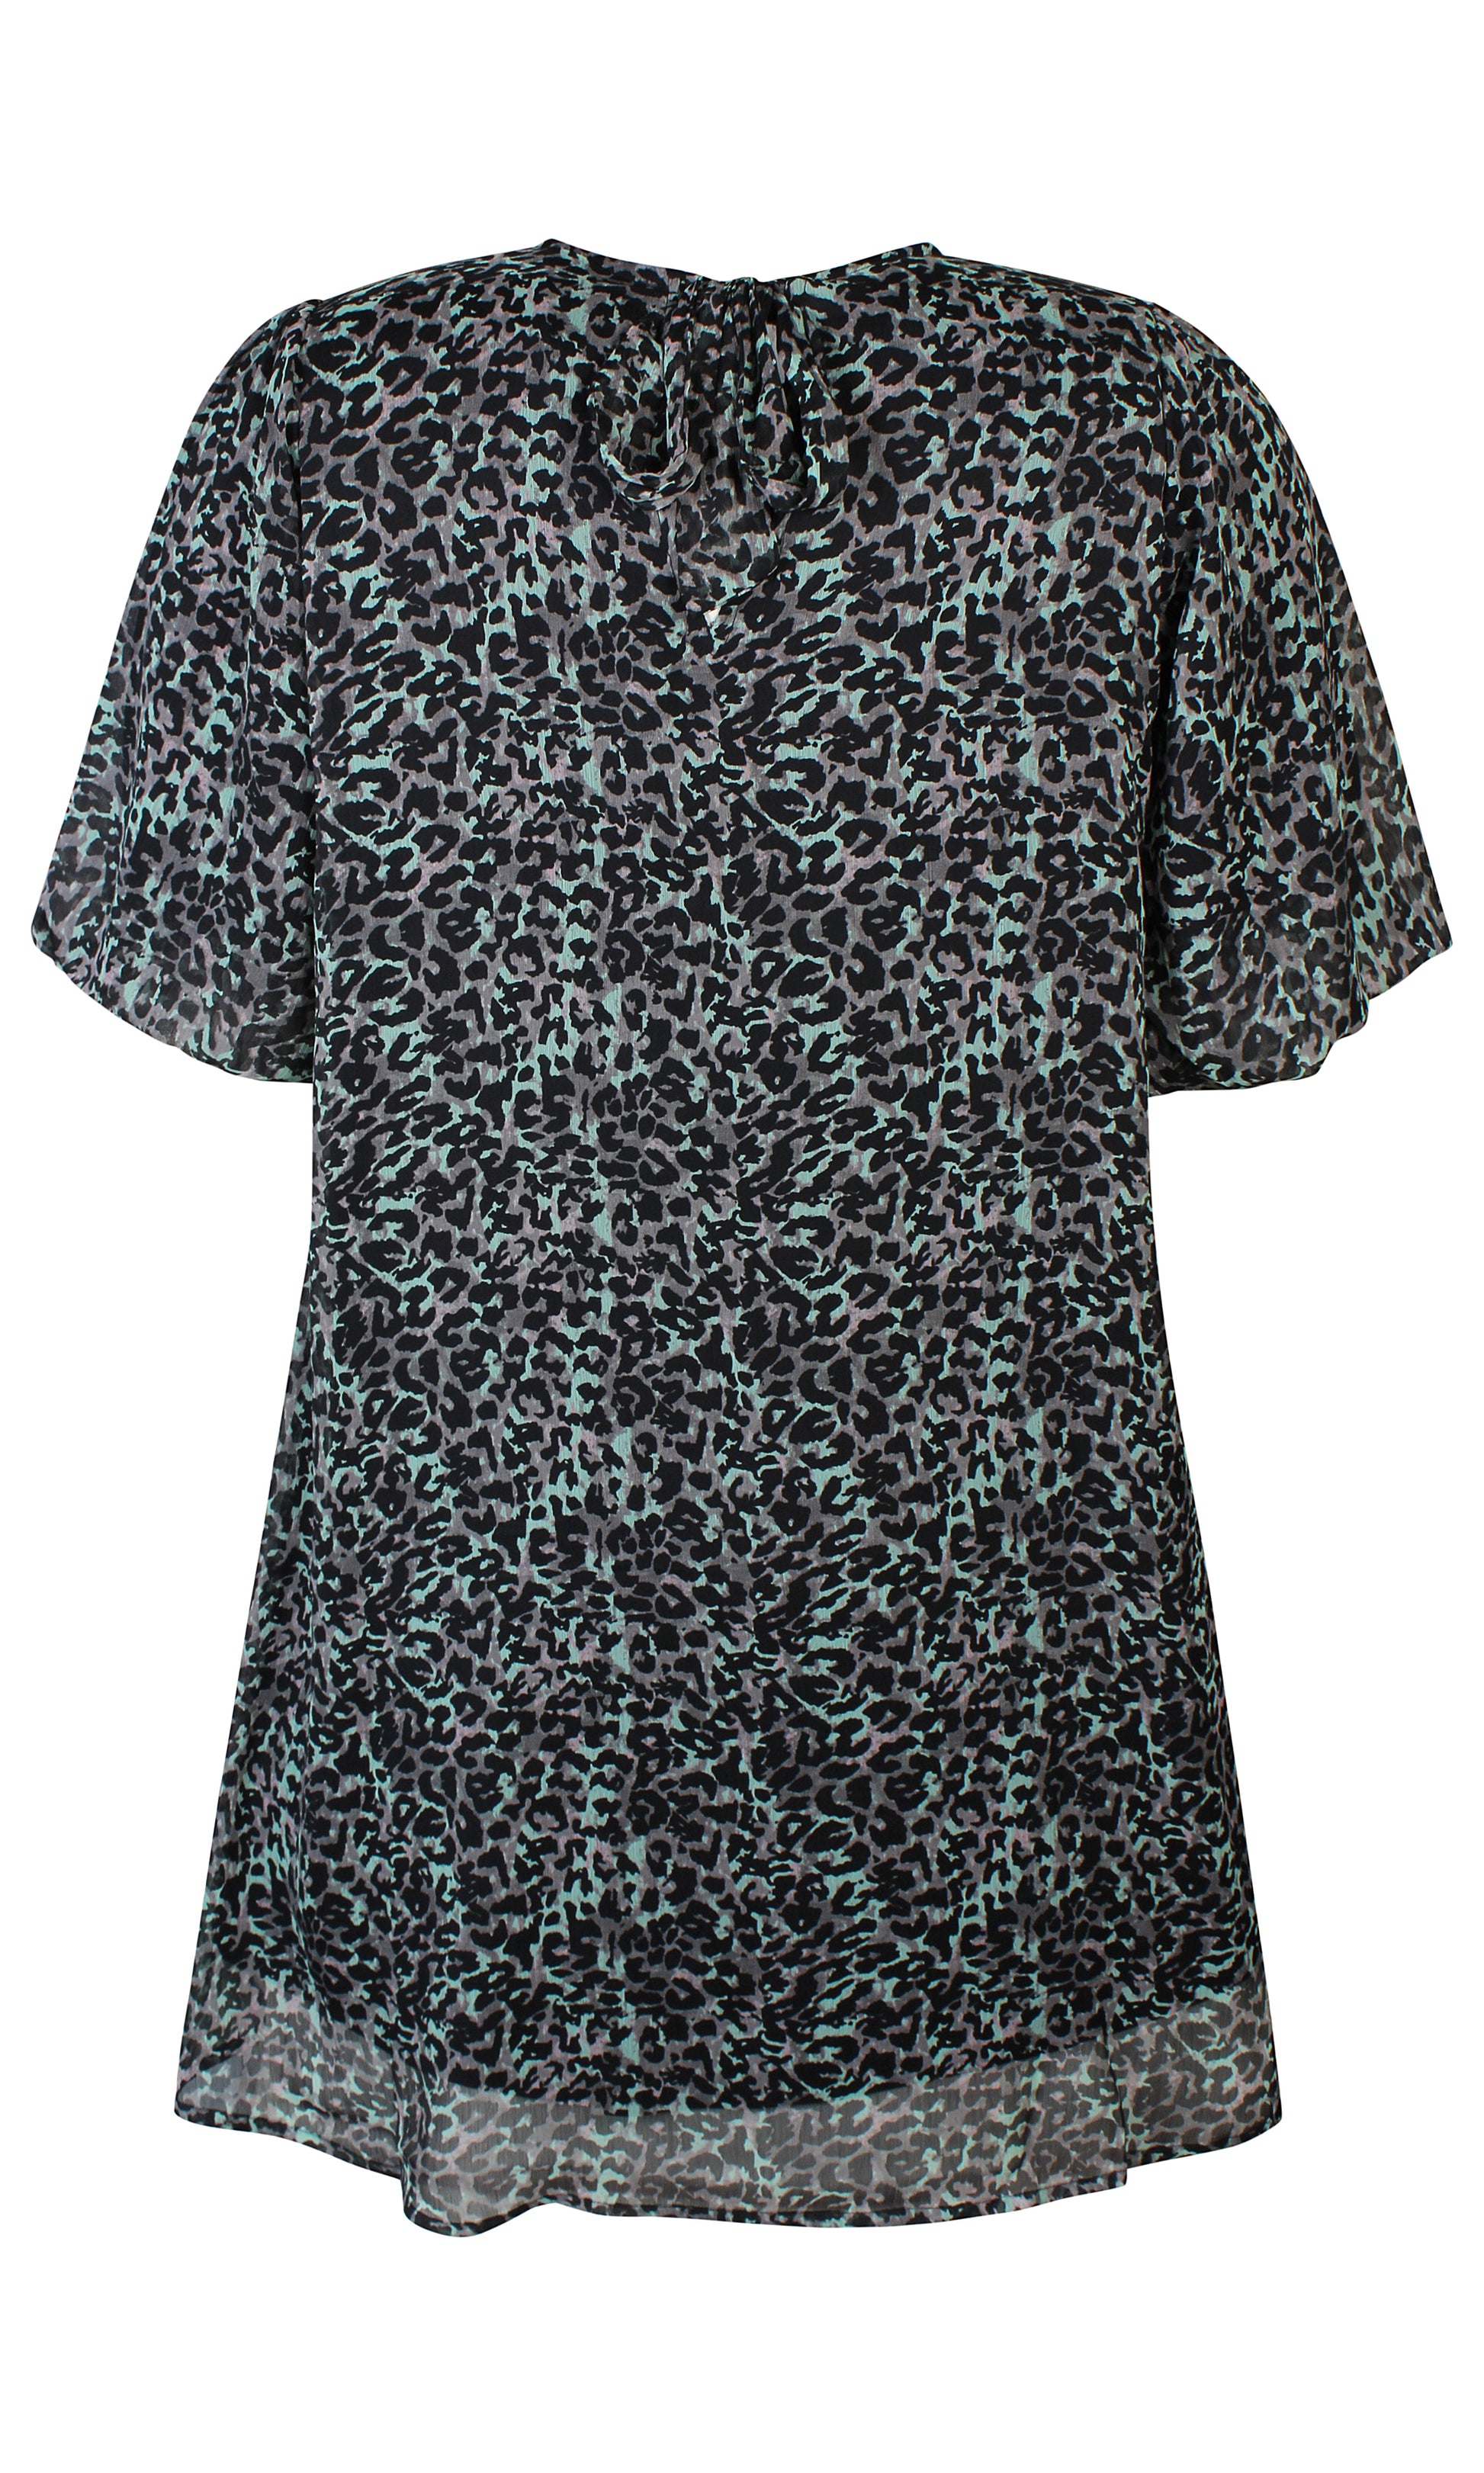 ZhRyann Dress